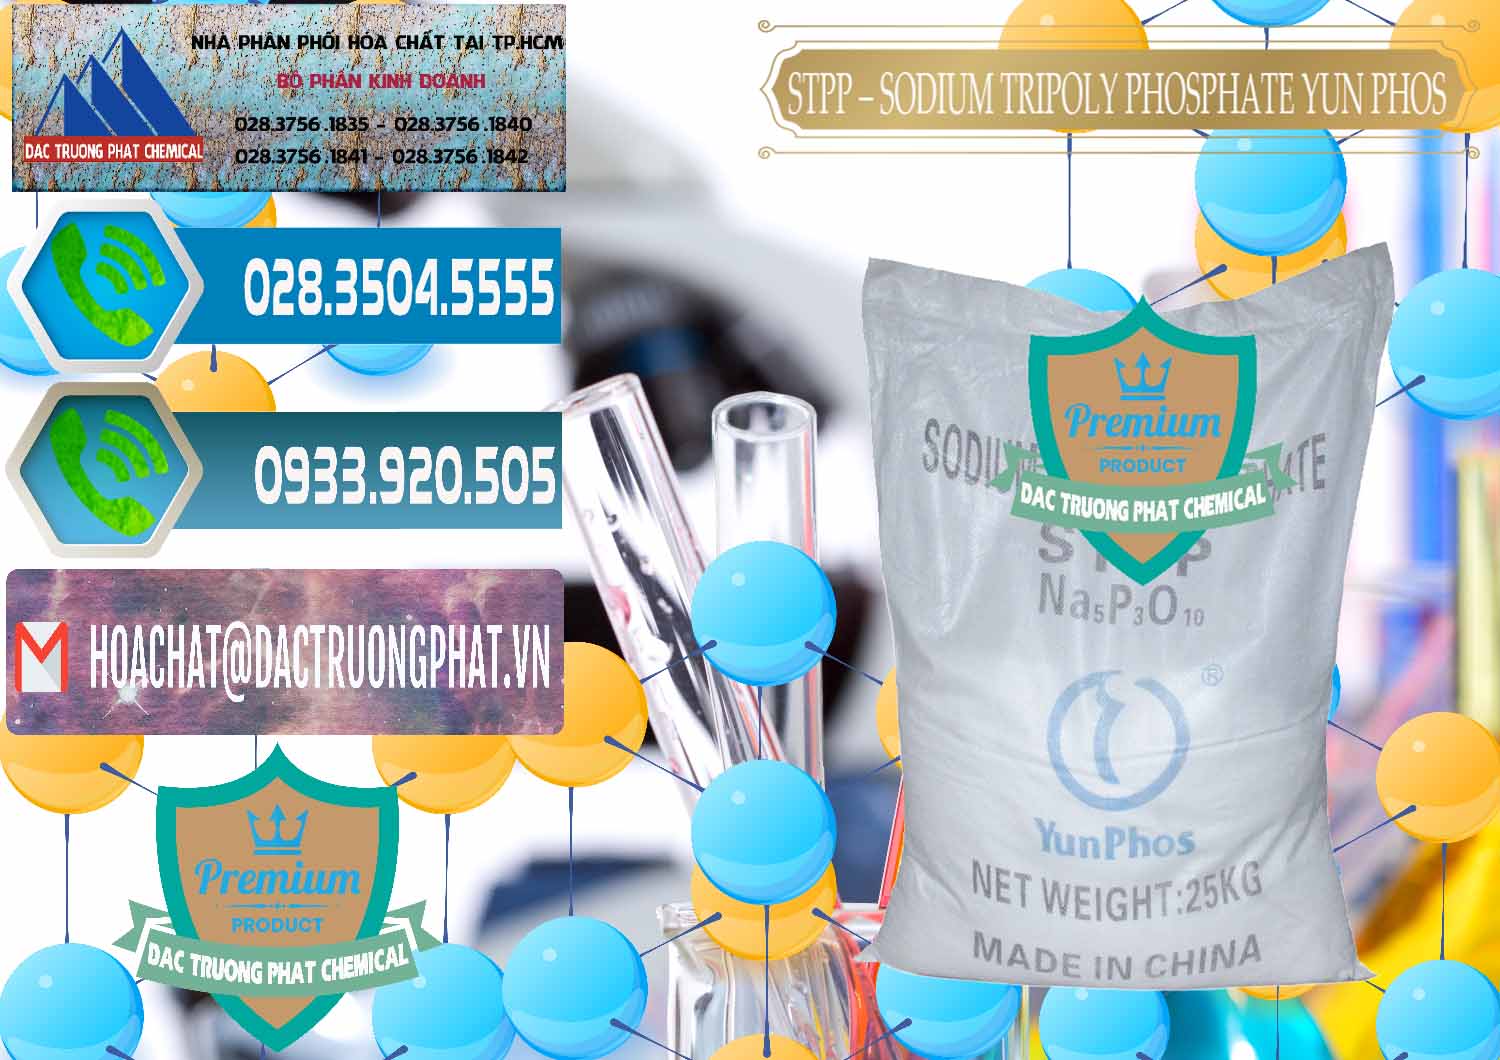 Chuyên kinh doanh - bán Sodium Tripoly Phosphate - STPP Yun Phos Trung Quốc China - 0153 - Nơi chuyên nhập khẩu & phân phối hóa chất tại TP.HCM - congtyhoachat.net